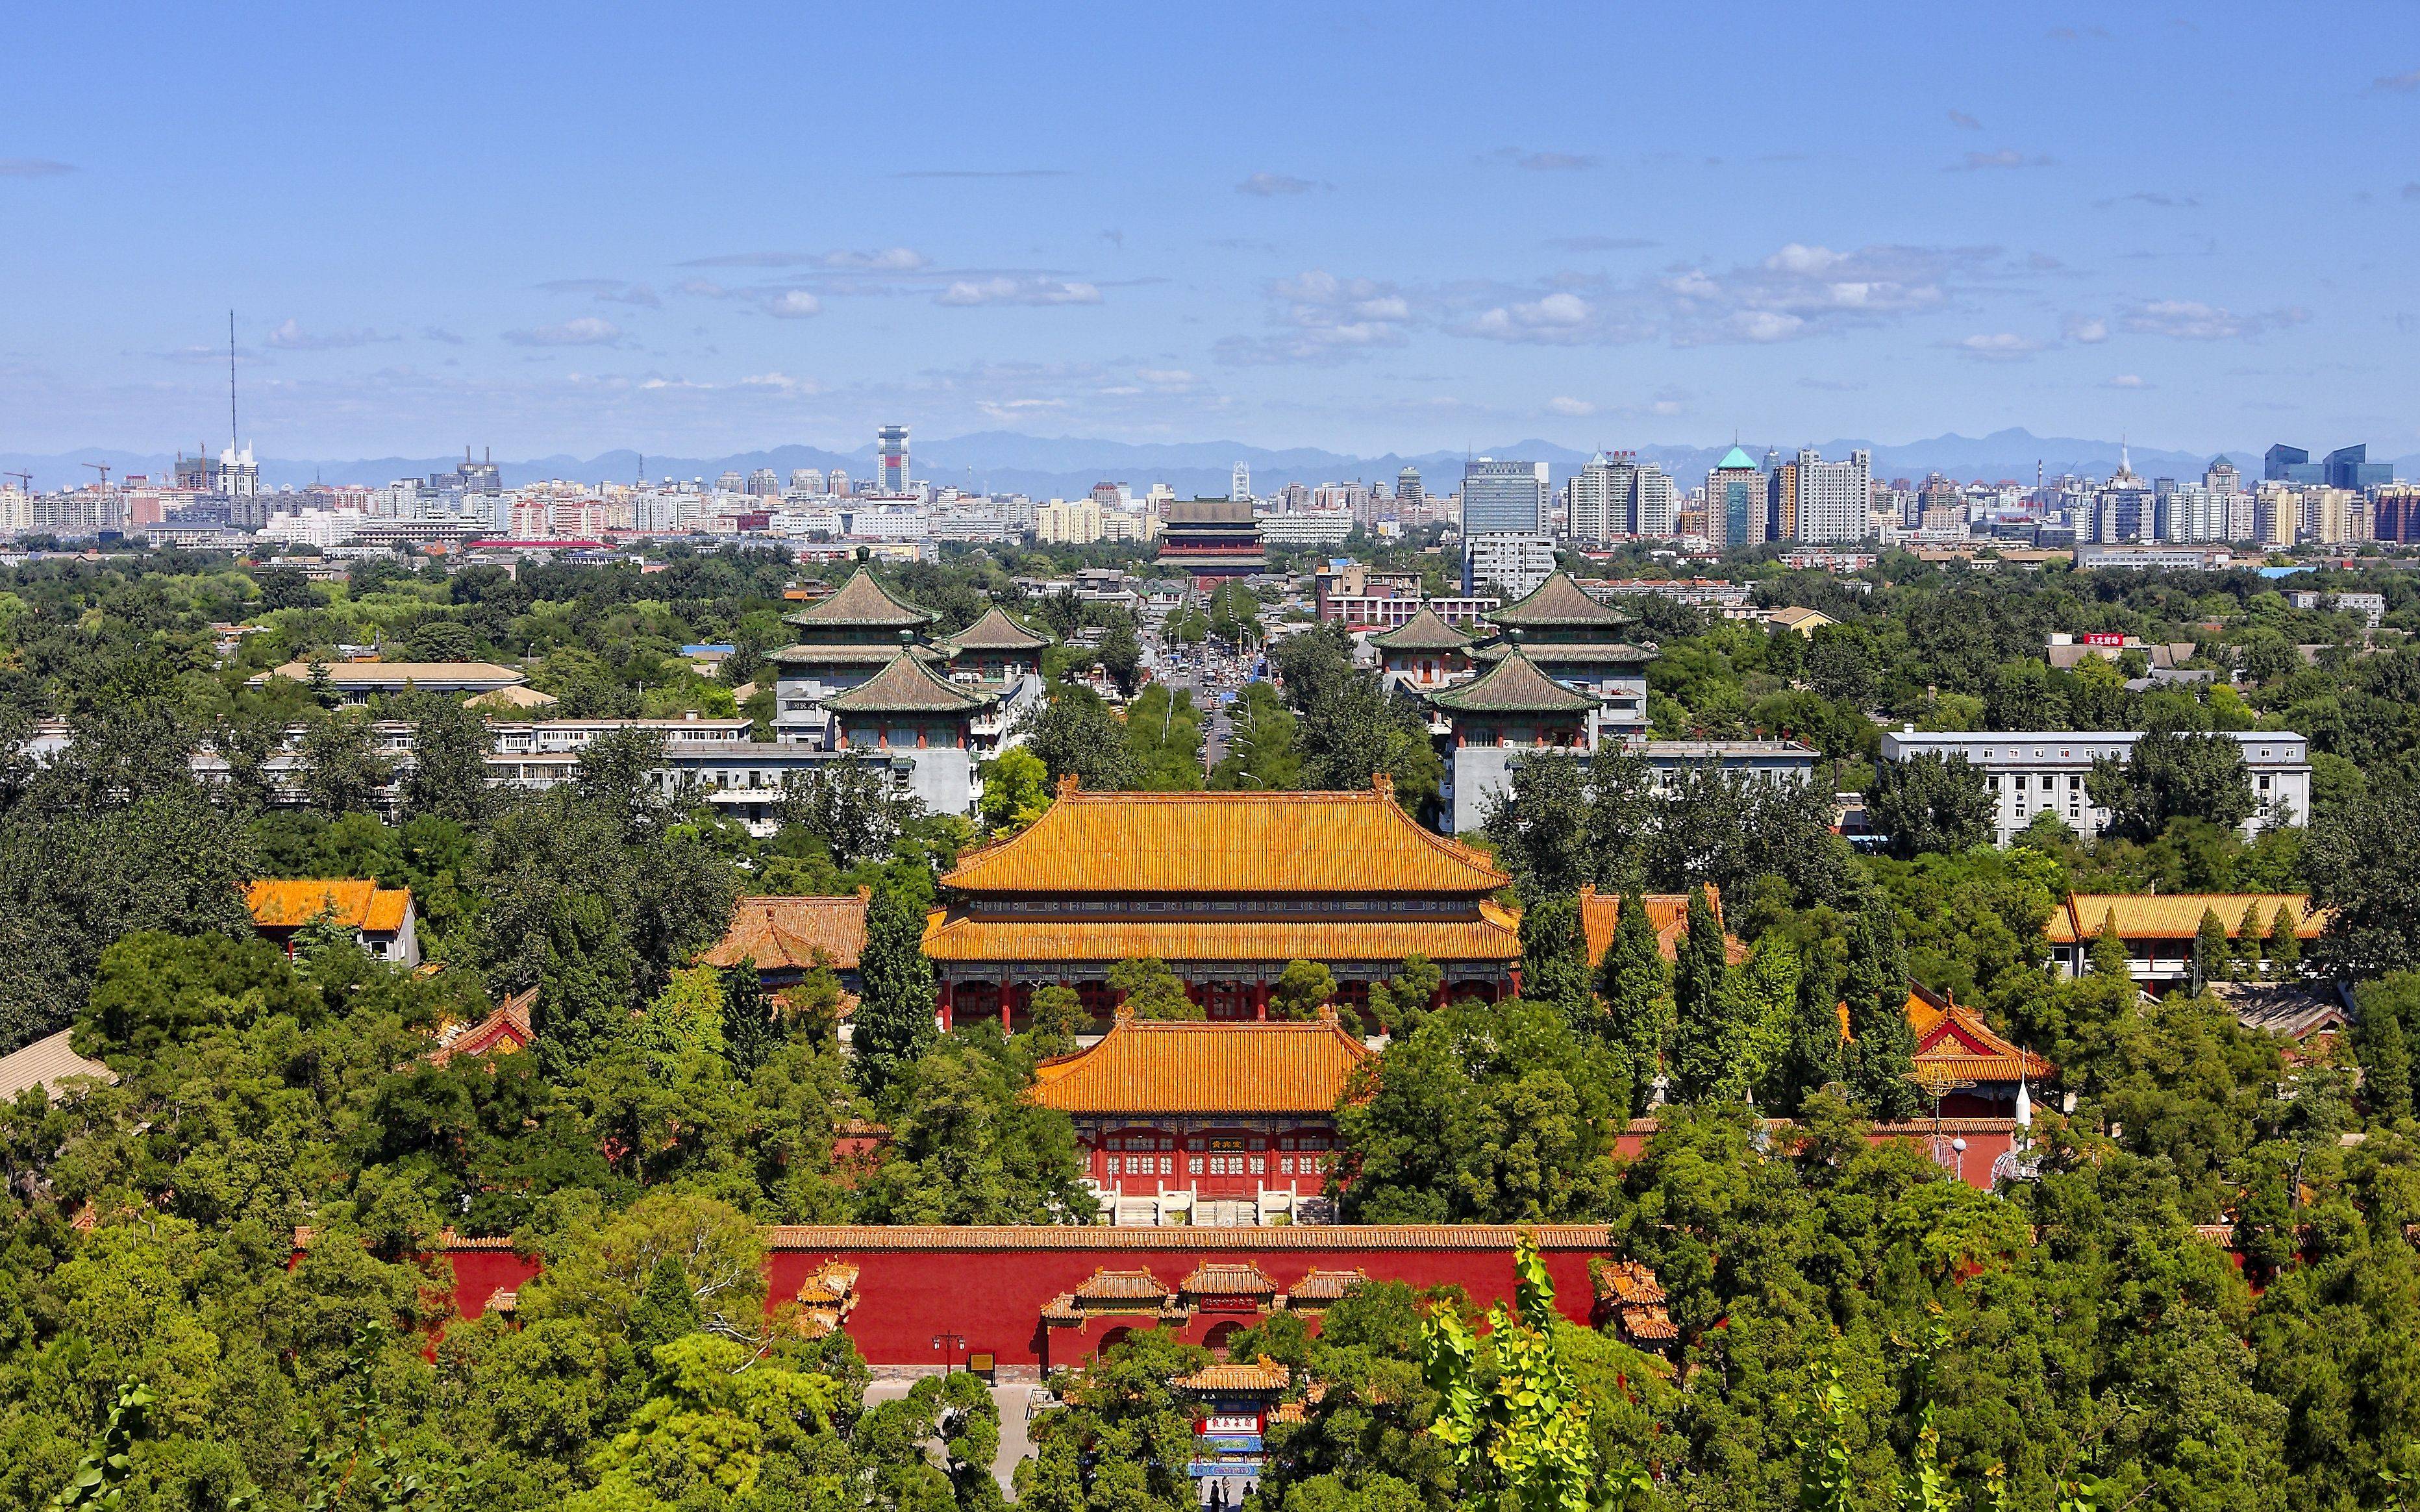 新闻8点见丨北京中轴线文化遗产如何保护立法机关解读